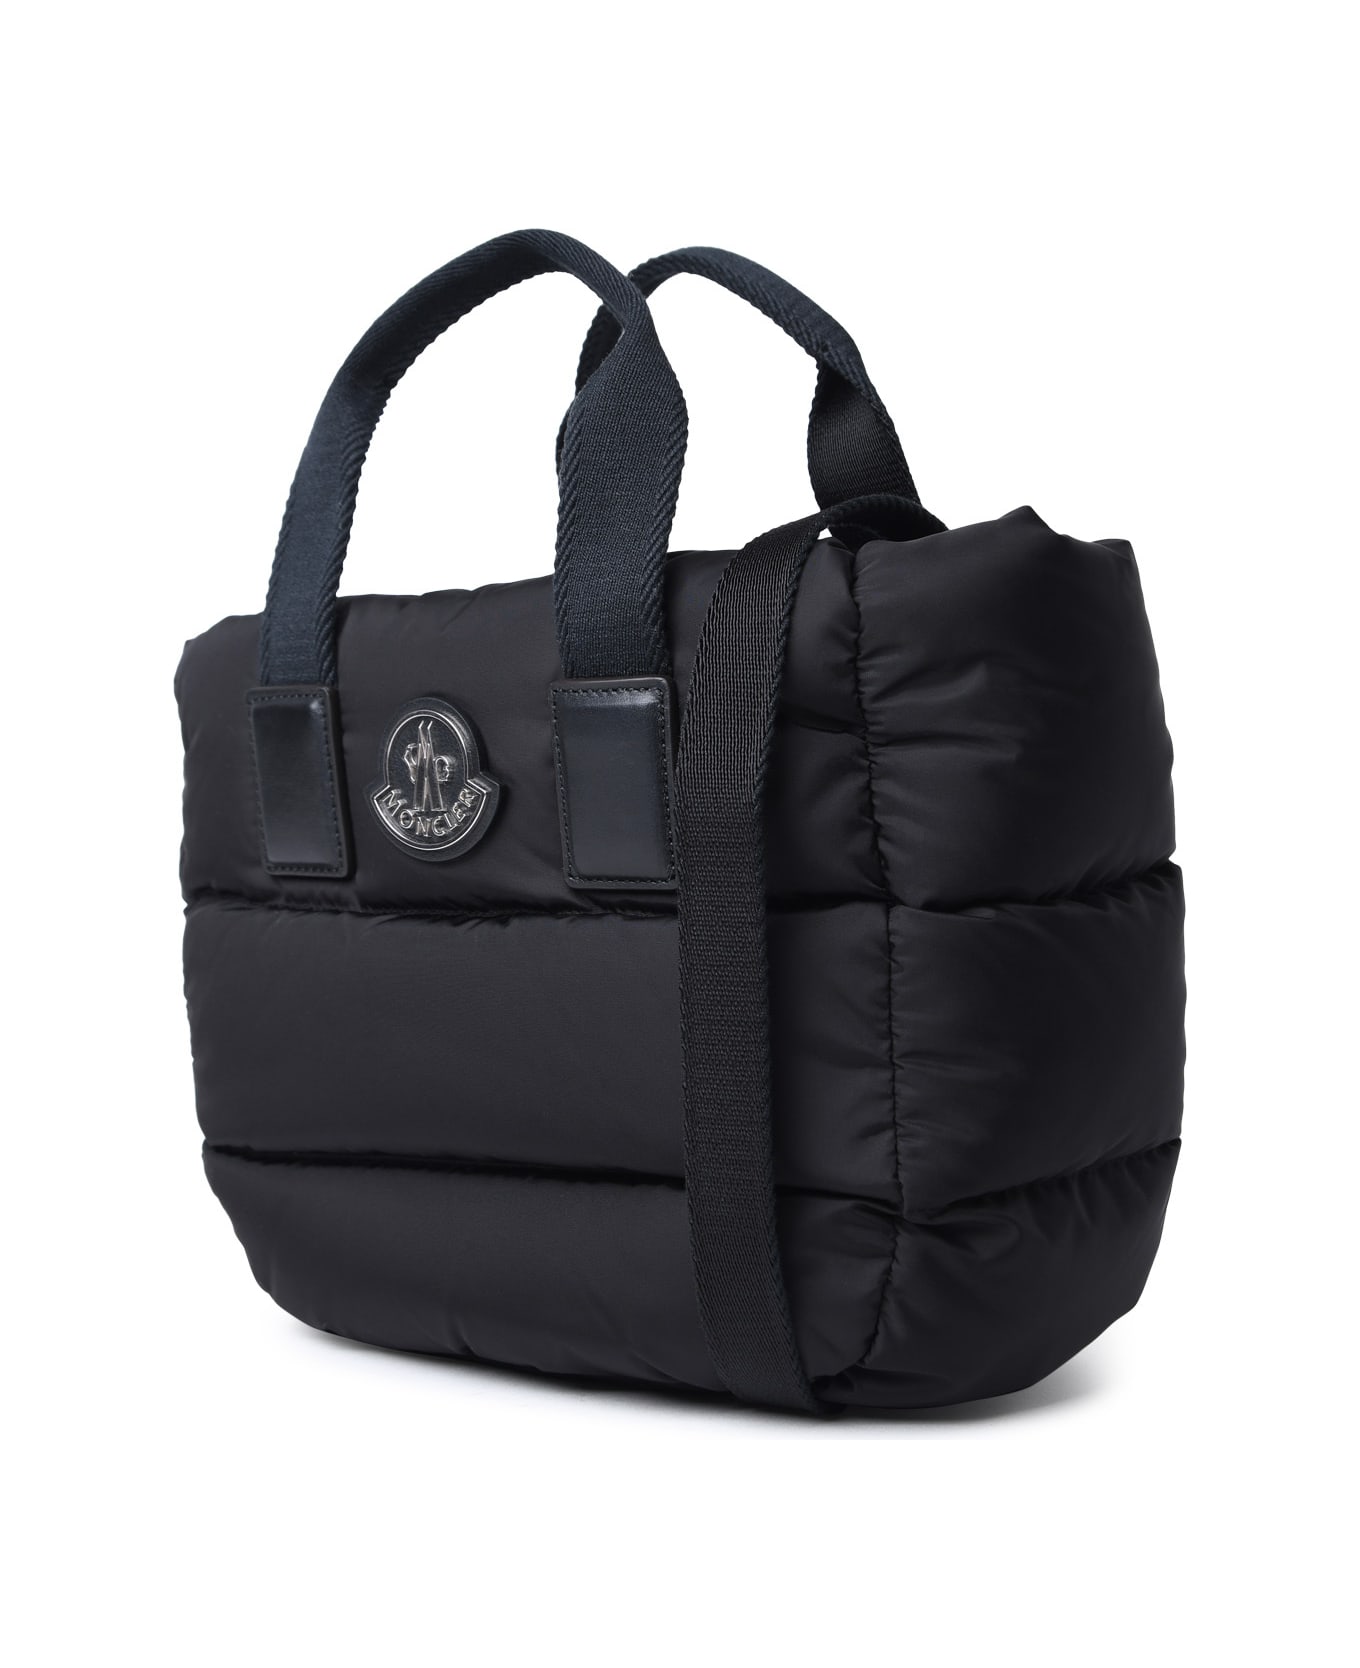 Moncler 'caradoc' Mini Bag In Black Nylon - Black